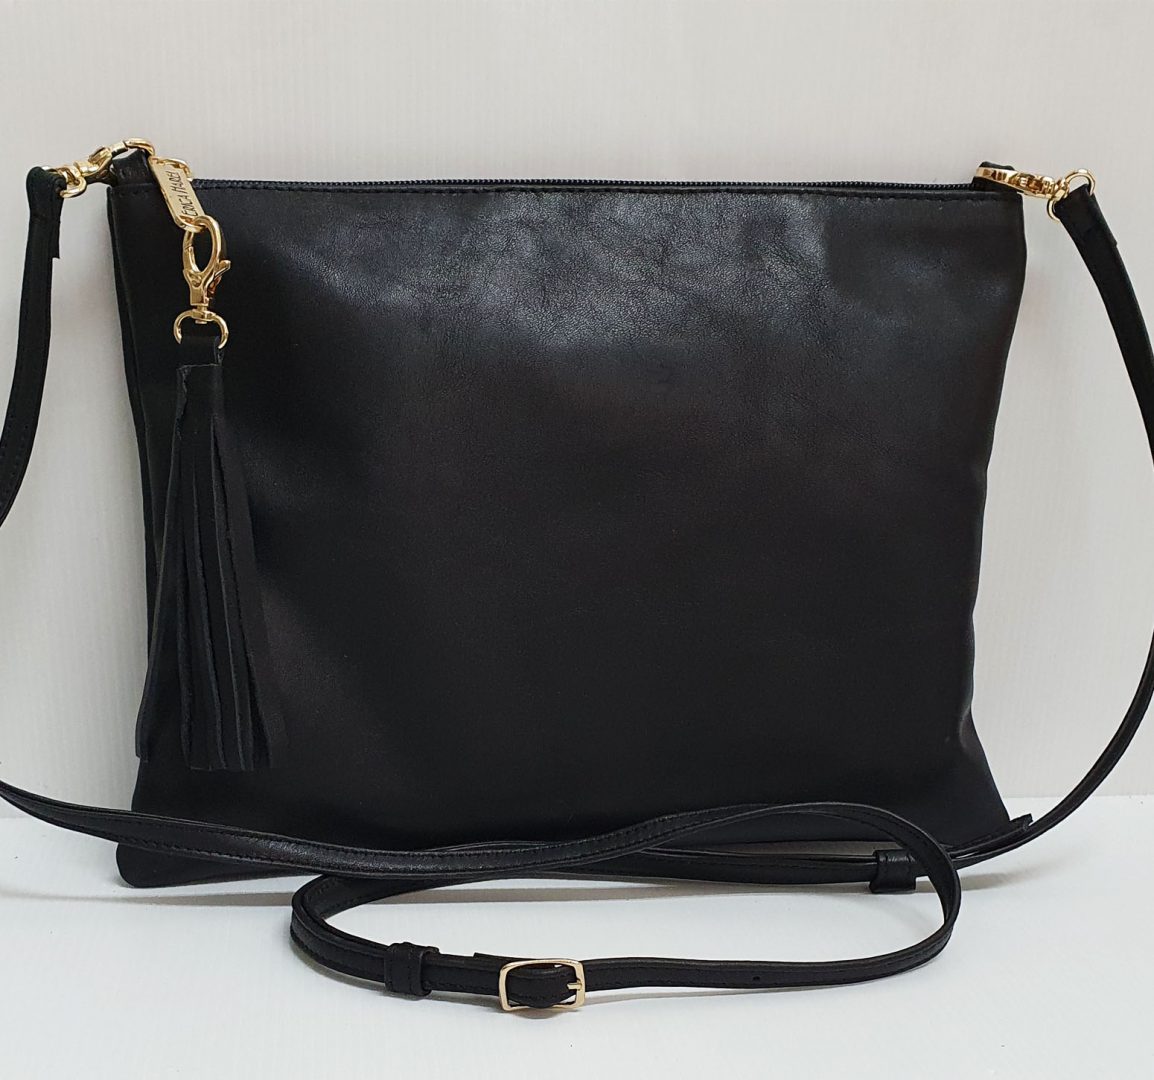 Black Leather Shoulder Bag Clutch